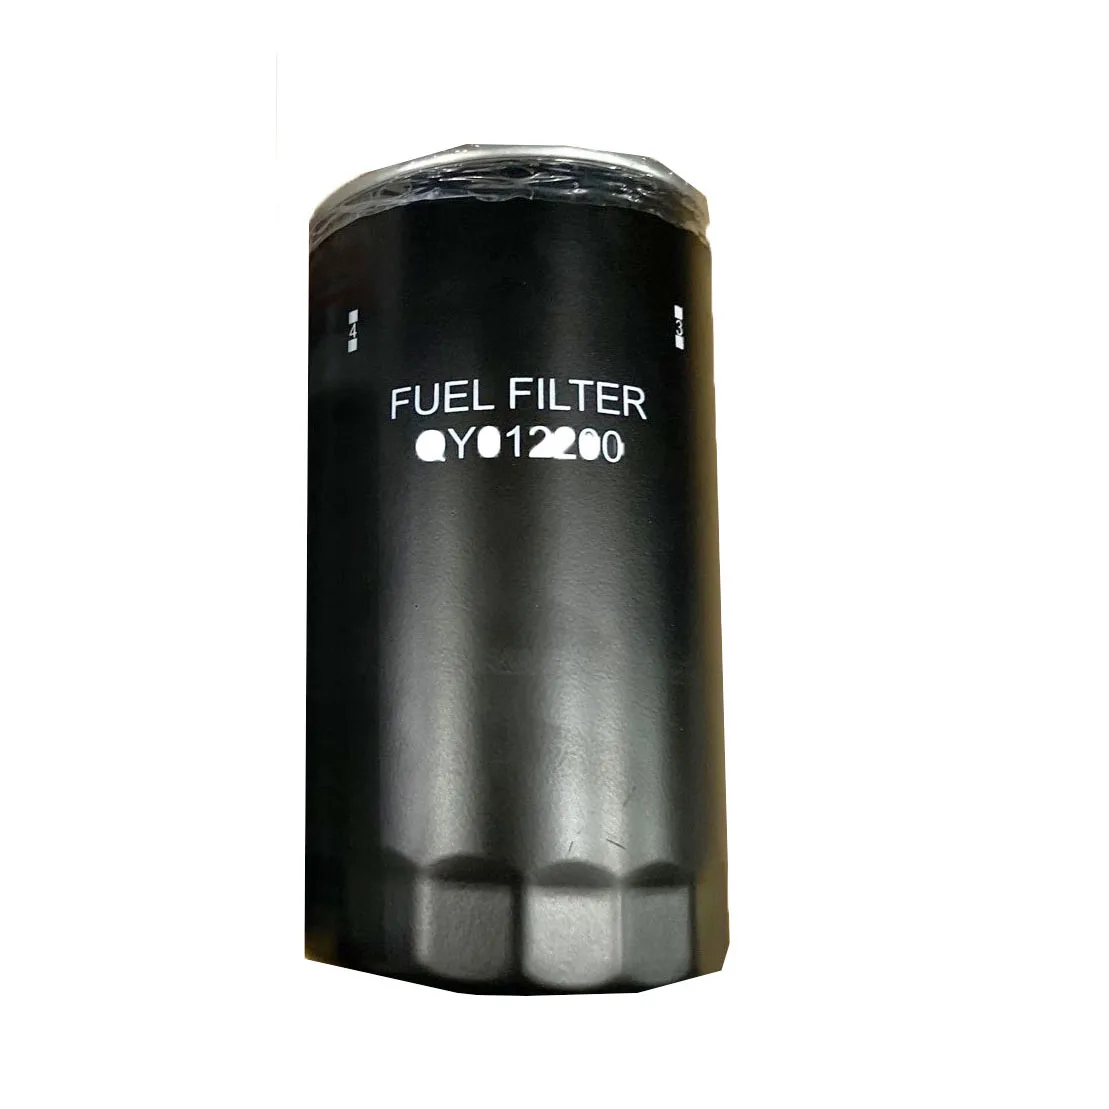 

Топливный фильтр хорошего качества QY012200 для двигателя MITSUBISHI FUSO 6D24T